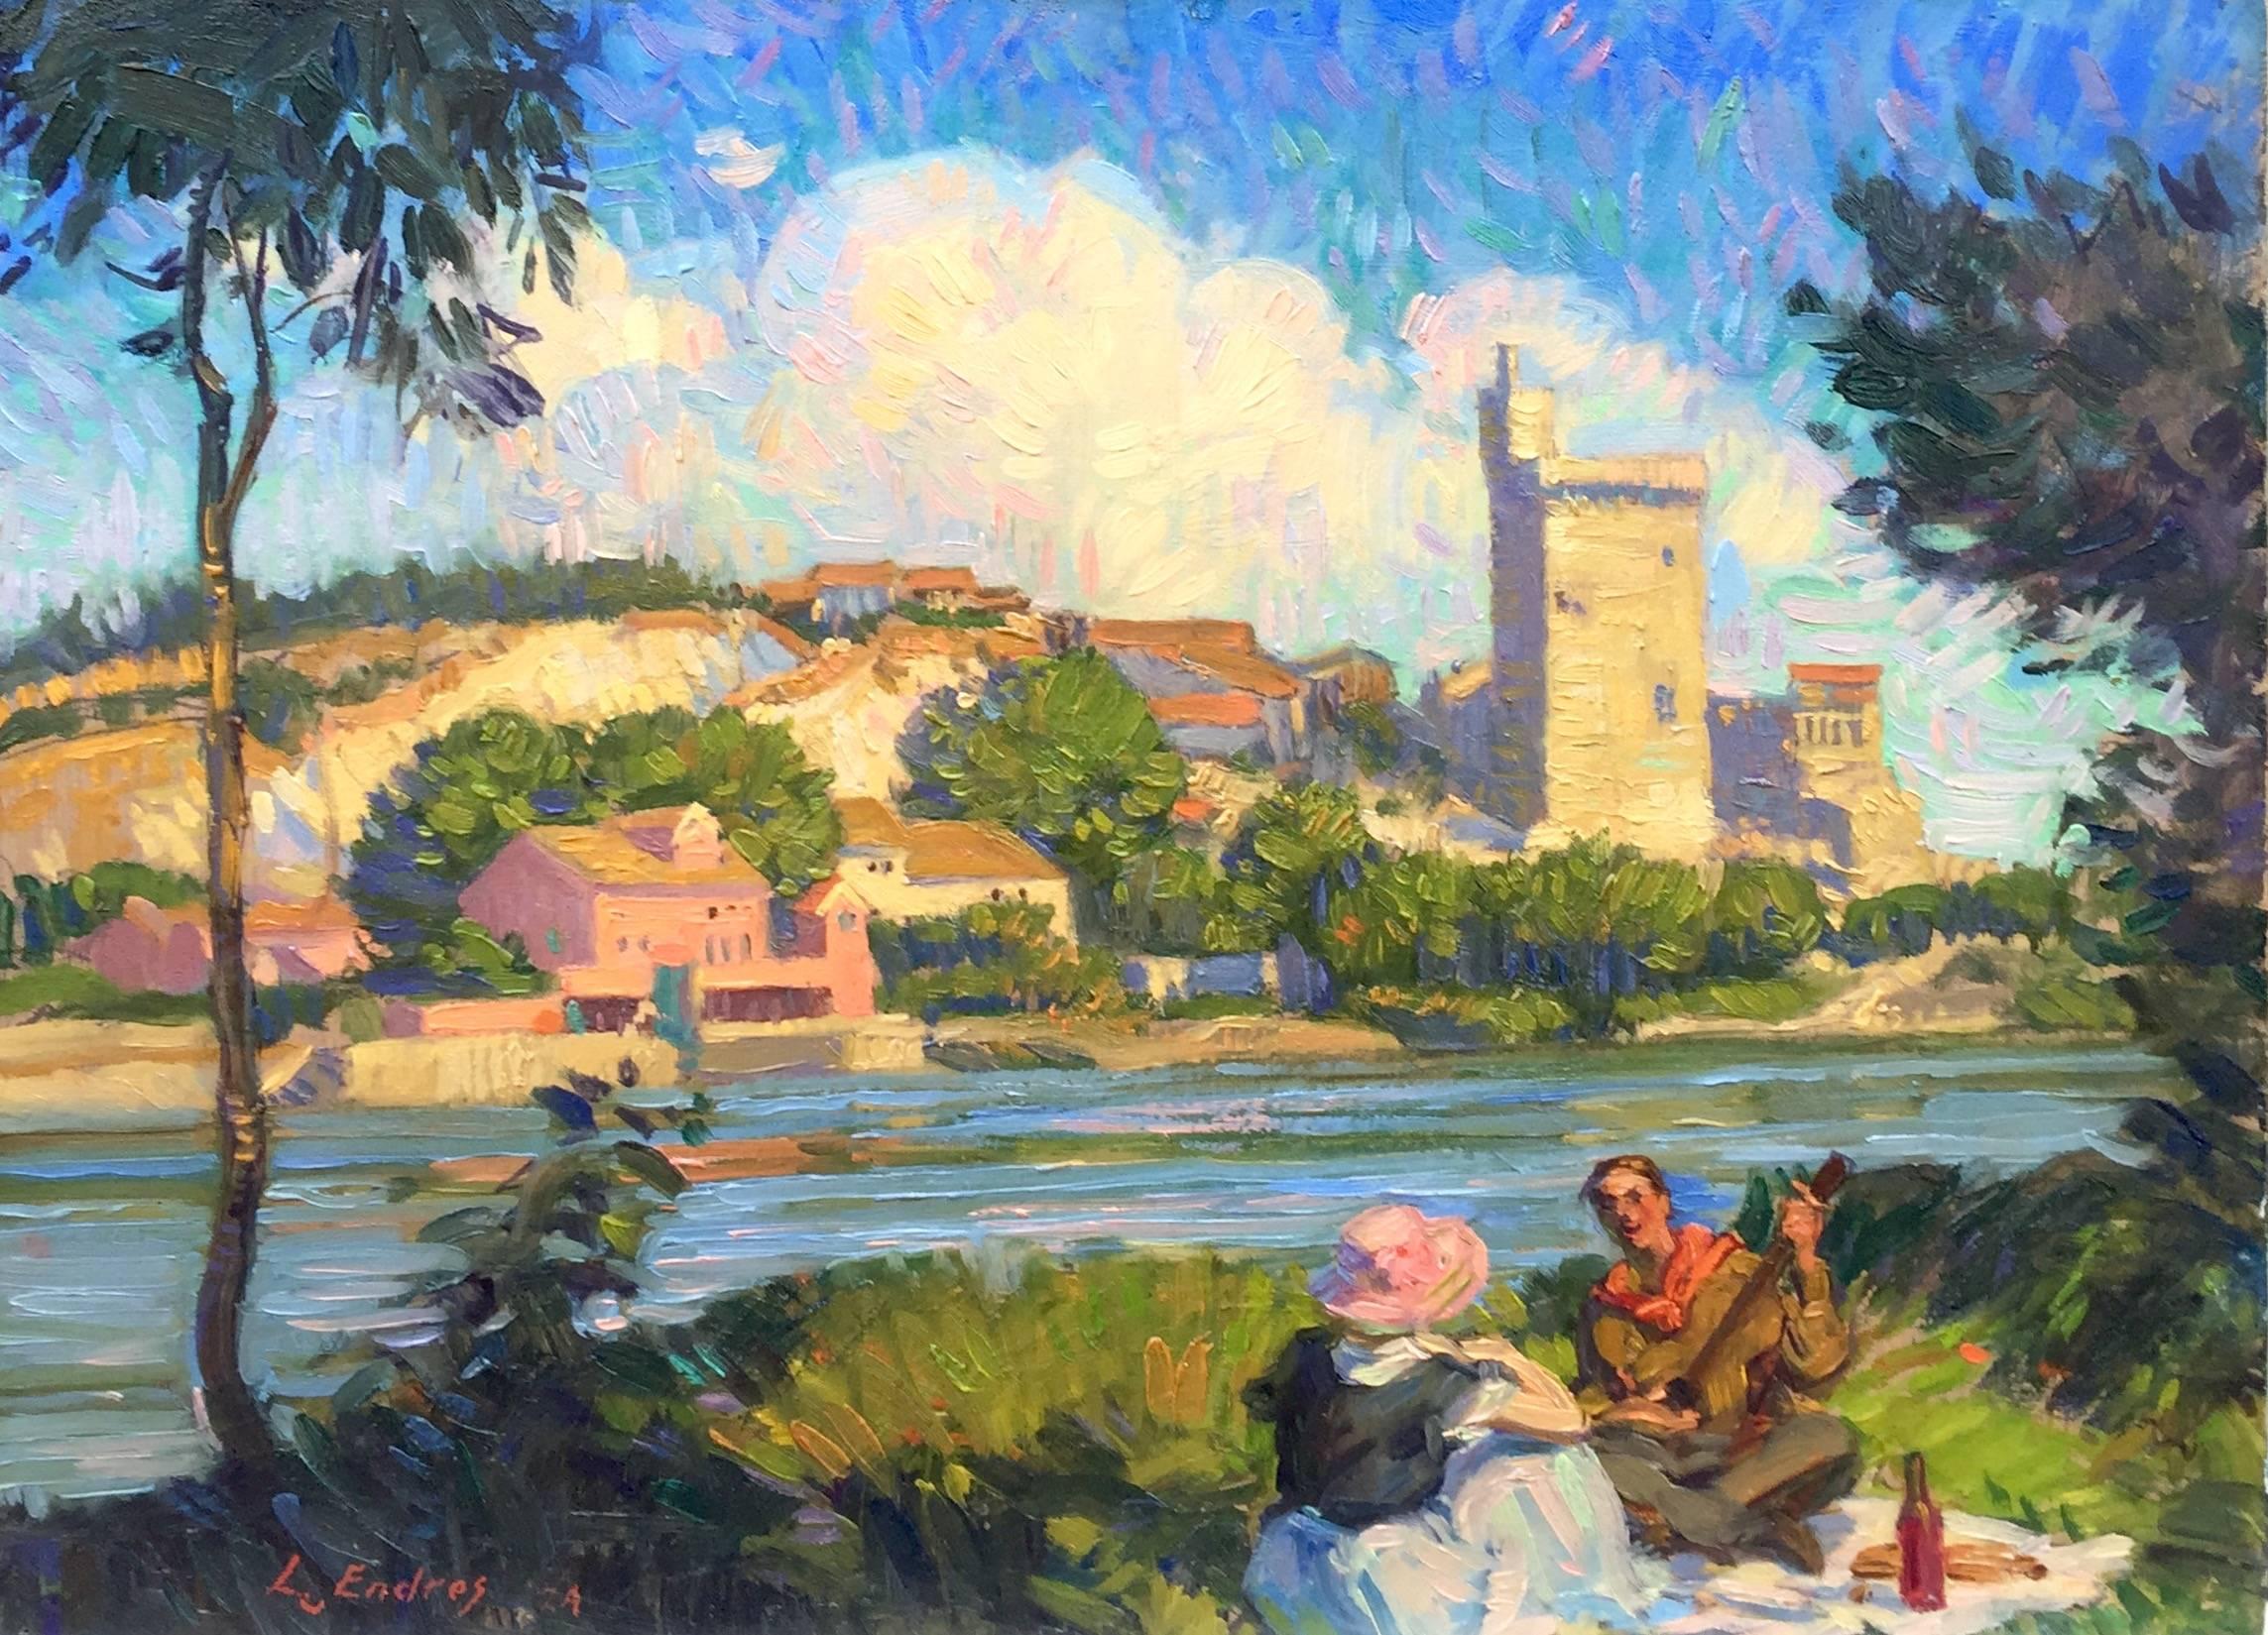 Louis Endres Landscape Painting - "Villeneuve-les-Avignon"